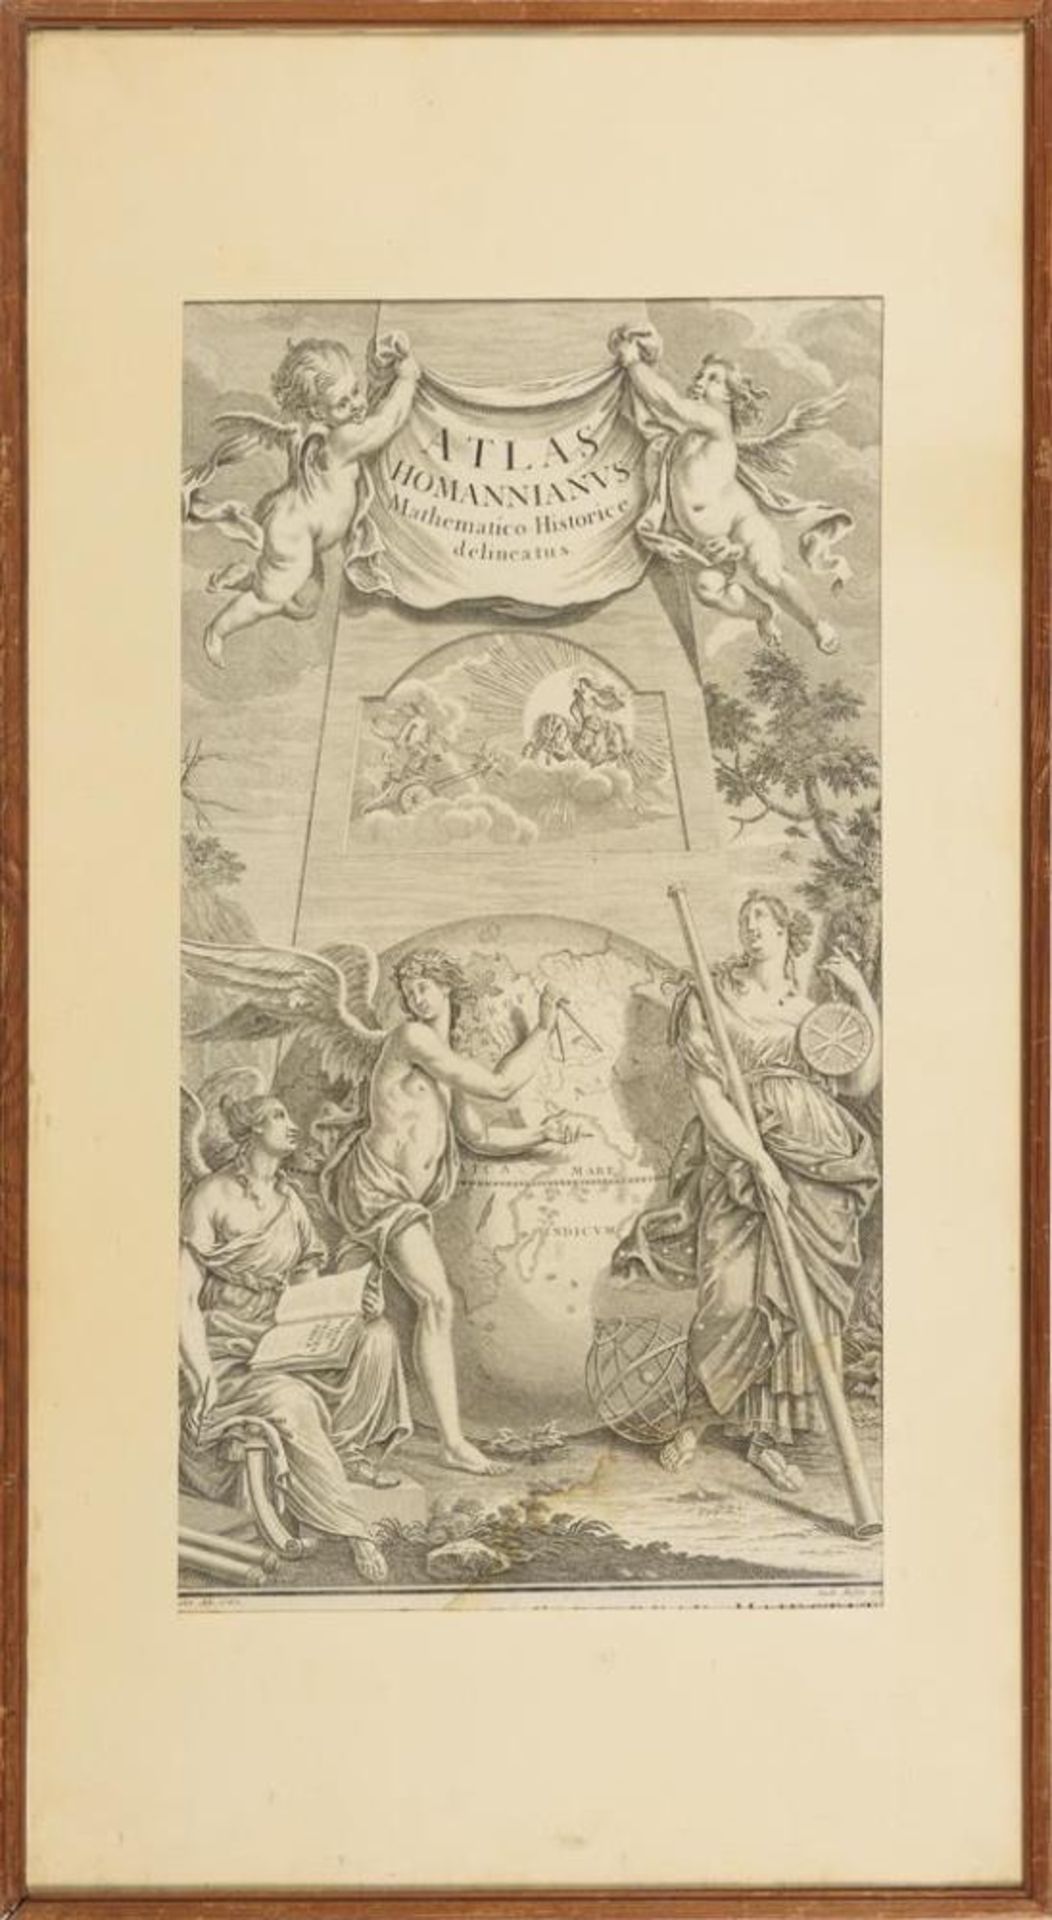 HOMANN, Johann Baptist (Erben). Titelblatt aus "Atlas Homannianus Mathematico-Historice Delineatus". - Bild 2 aus 2